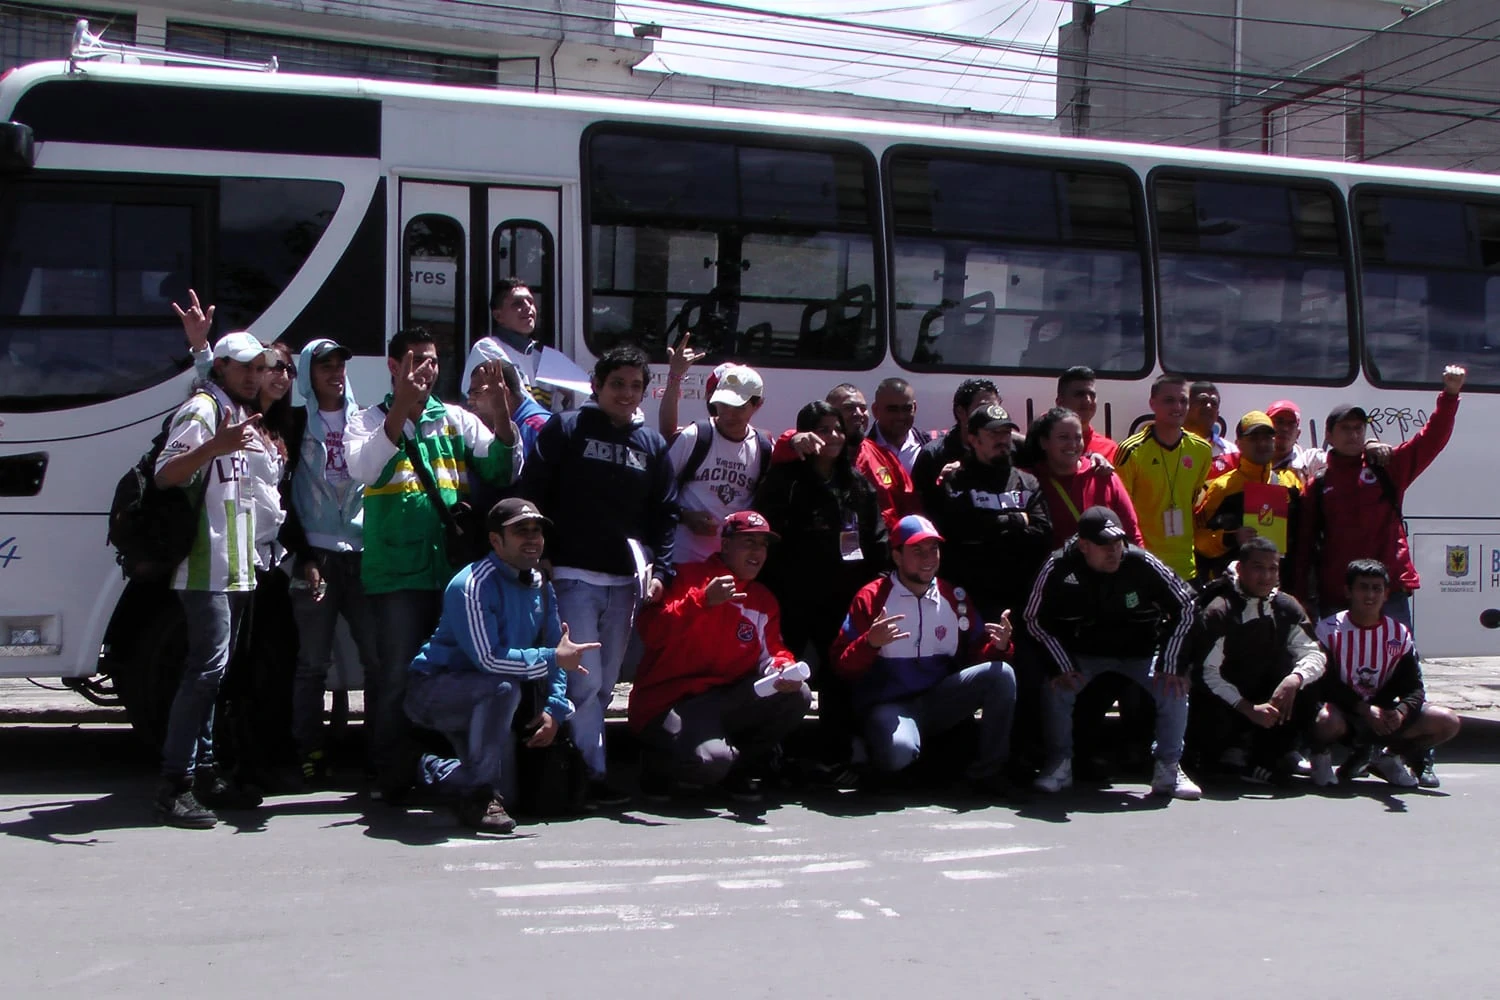 25 Jugendliche von 18 Fanklubs und der FJMBN stehen für ein Gruppenfoto zusammen vor einem weissen Autobus.